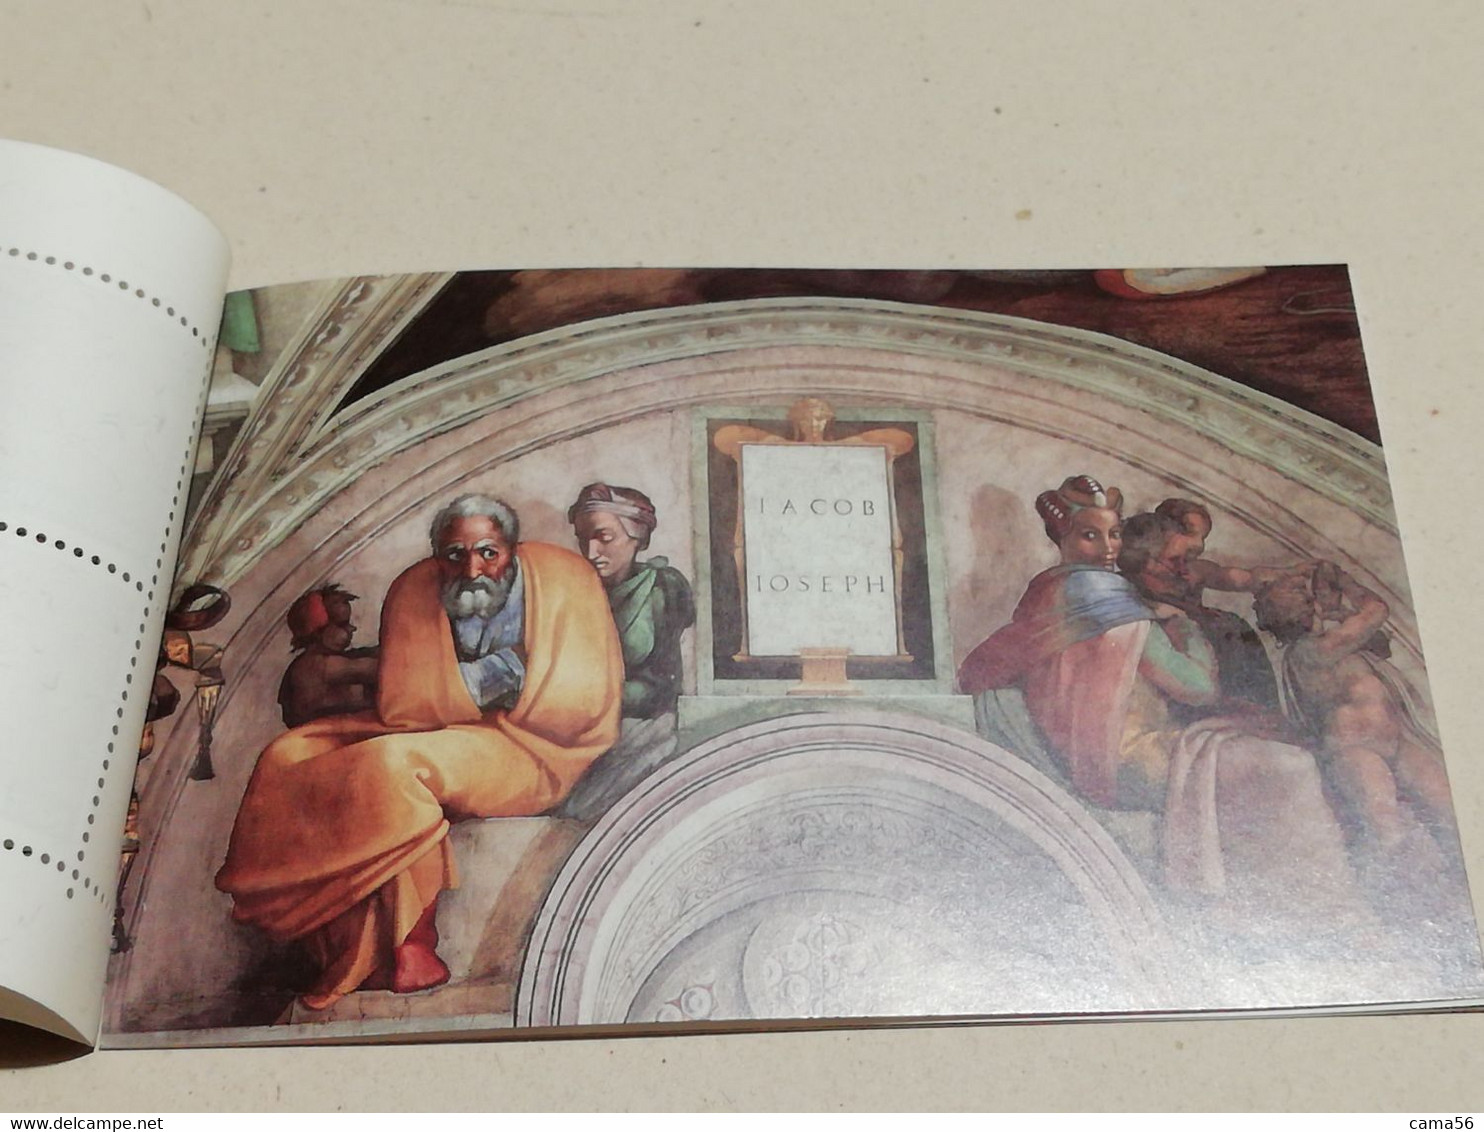 Vaticano 1991 - Libretto Restauro Della Cappella Sistina. - Libretti